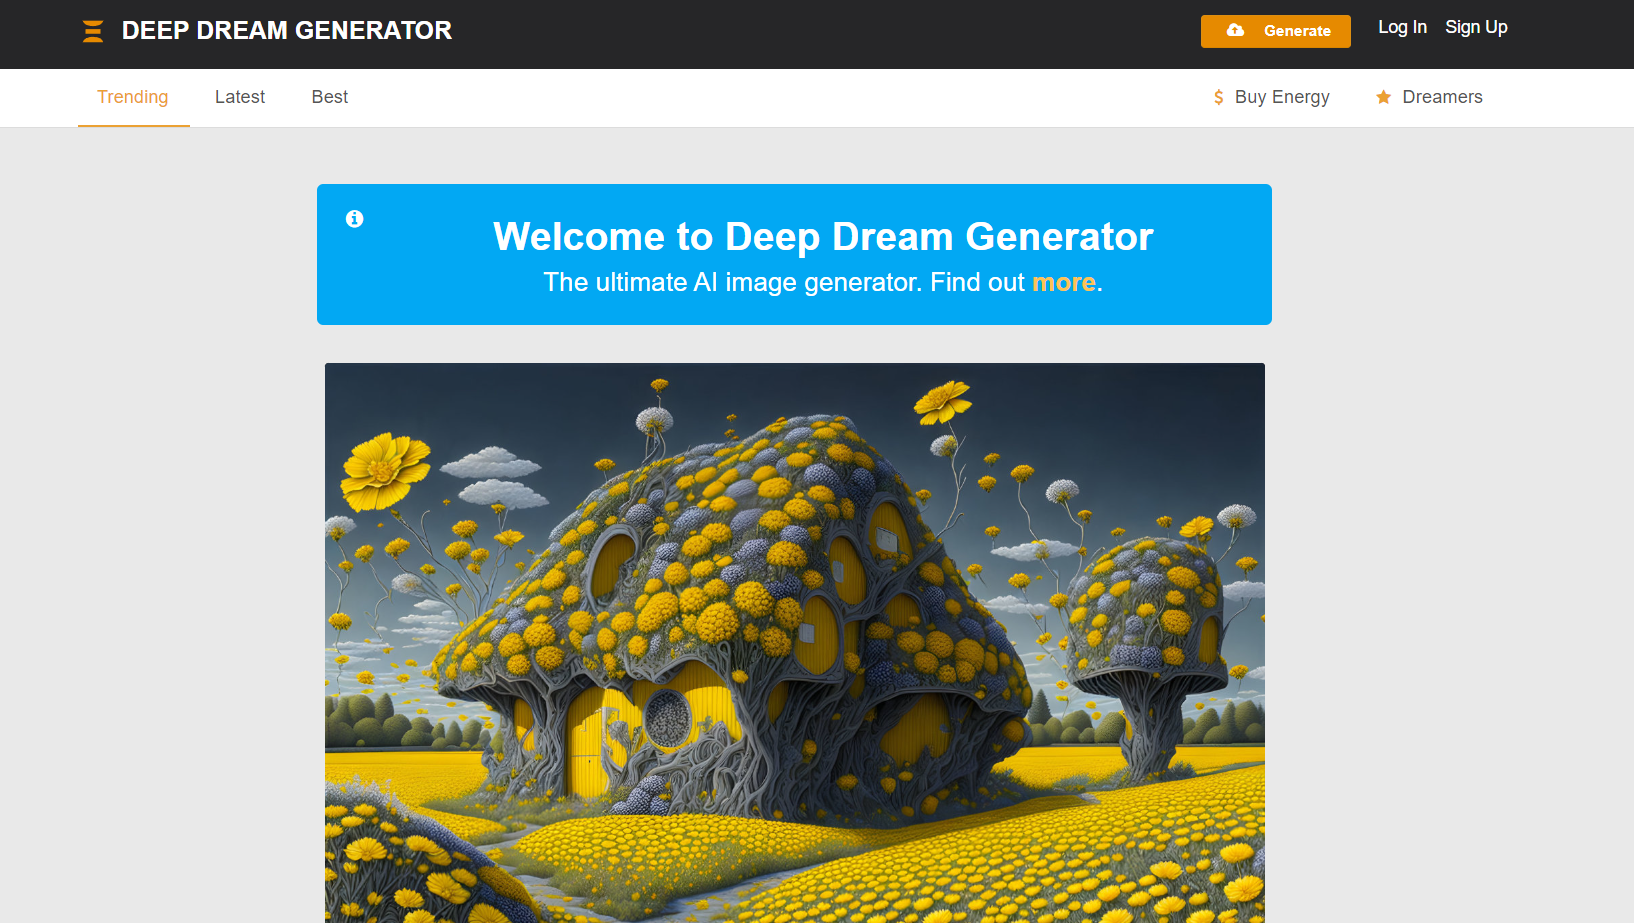 Deep Dream Generator Overview